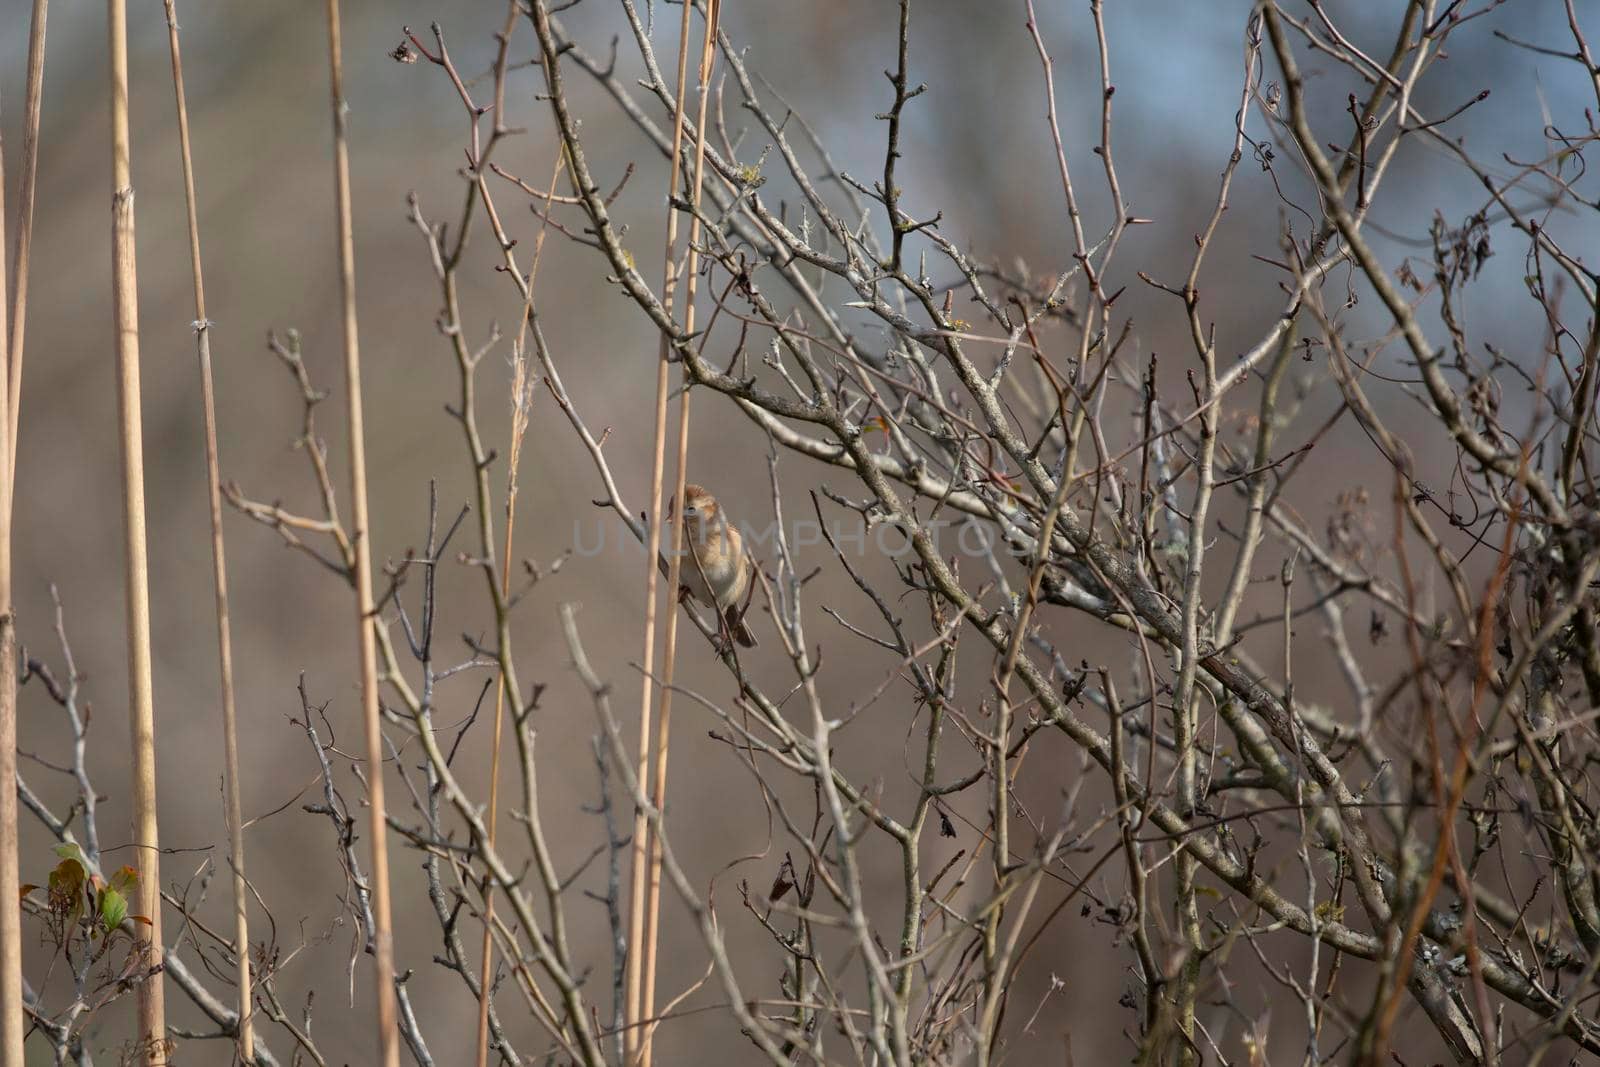 Field Sparrow in a Field by tornado98